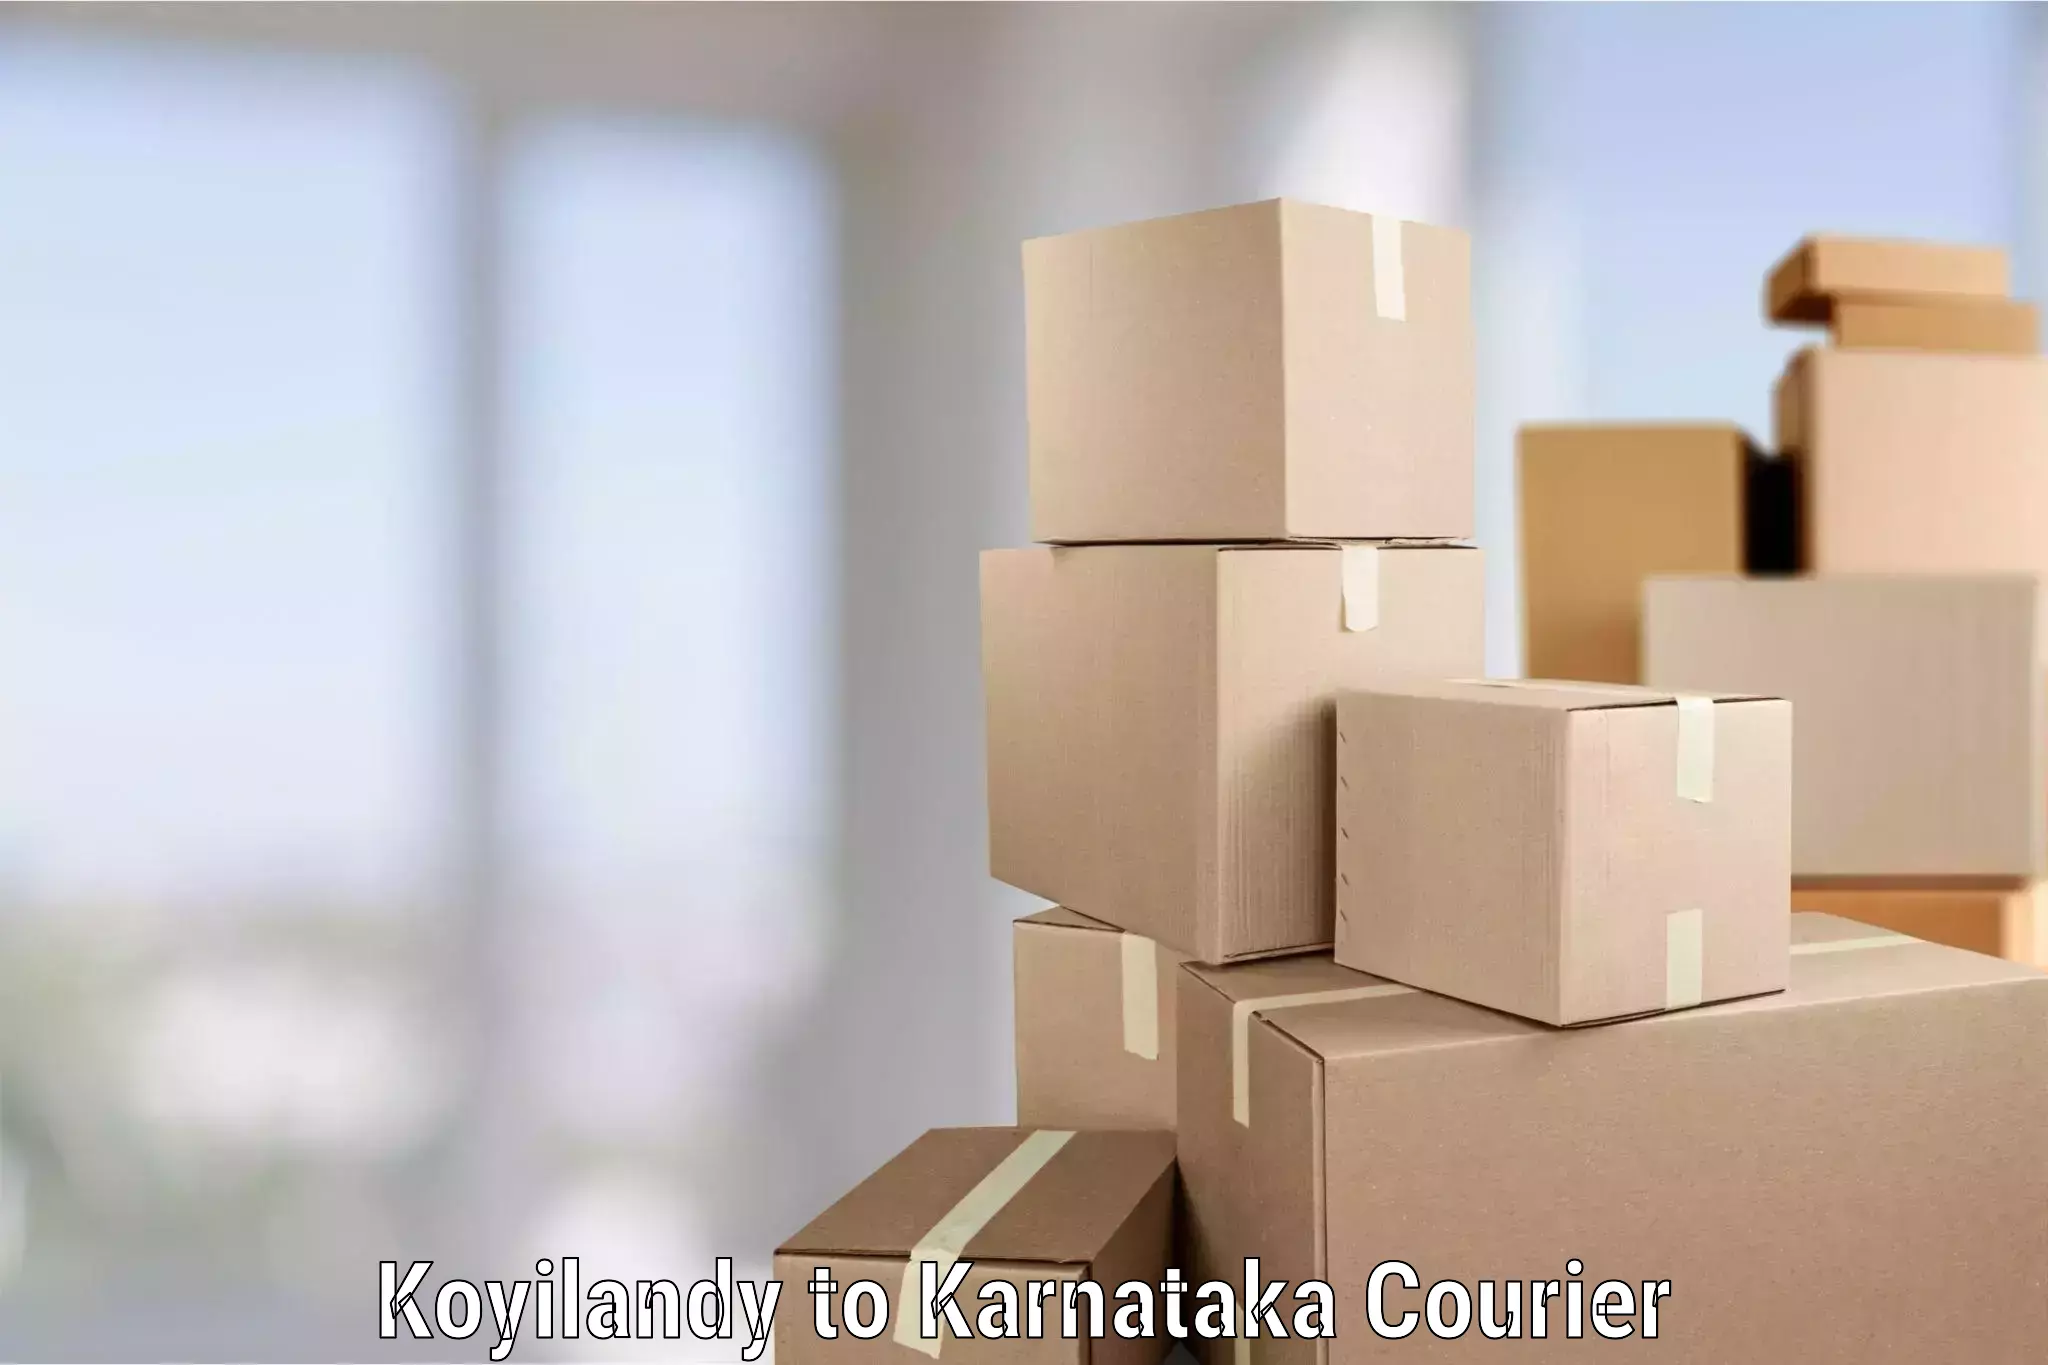 Furniture transport services Koyilandy to Karnataka